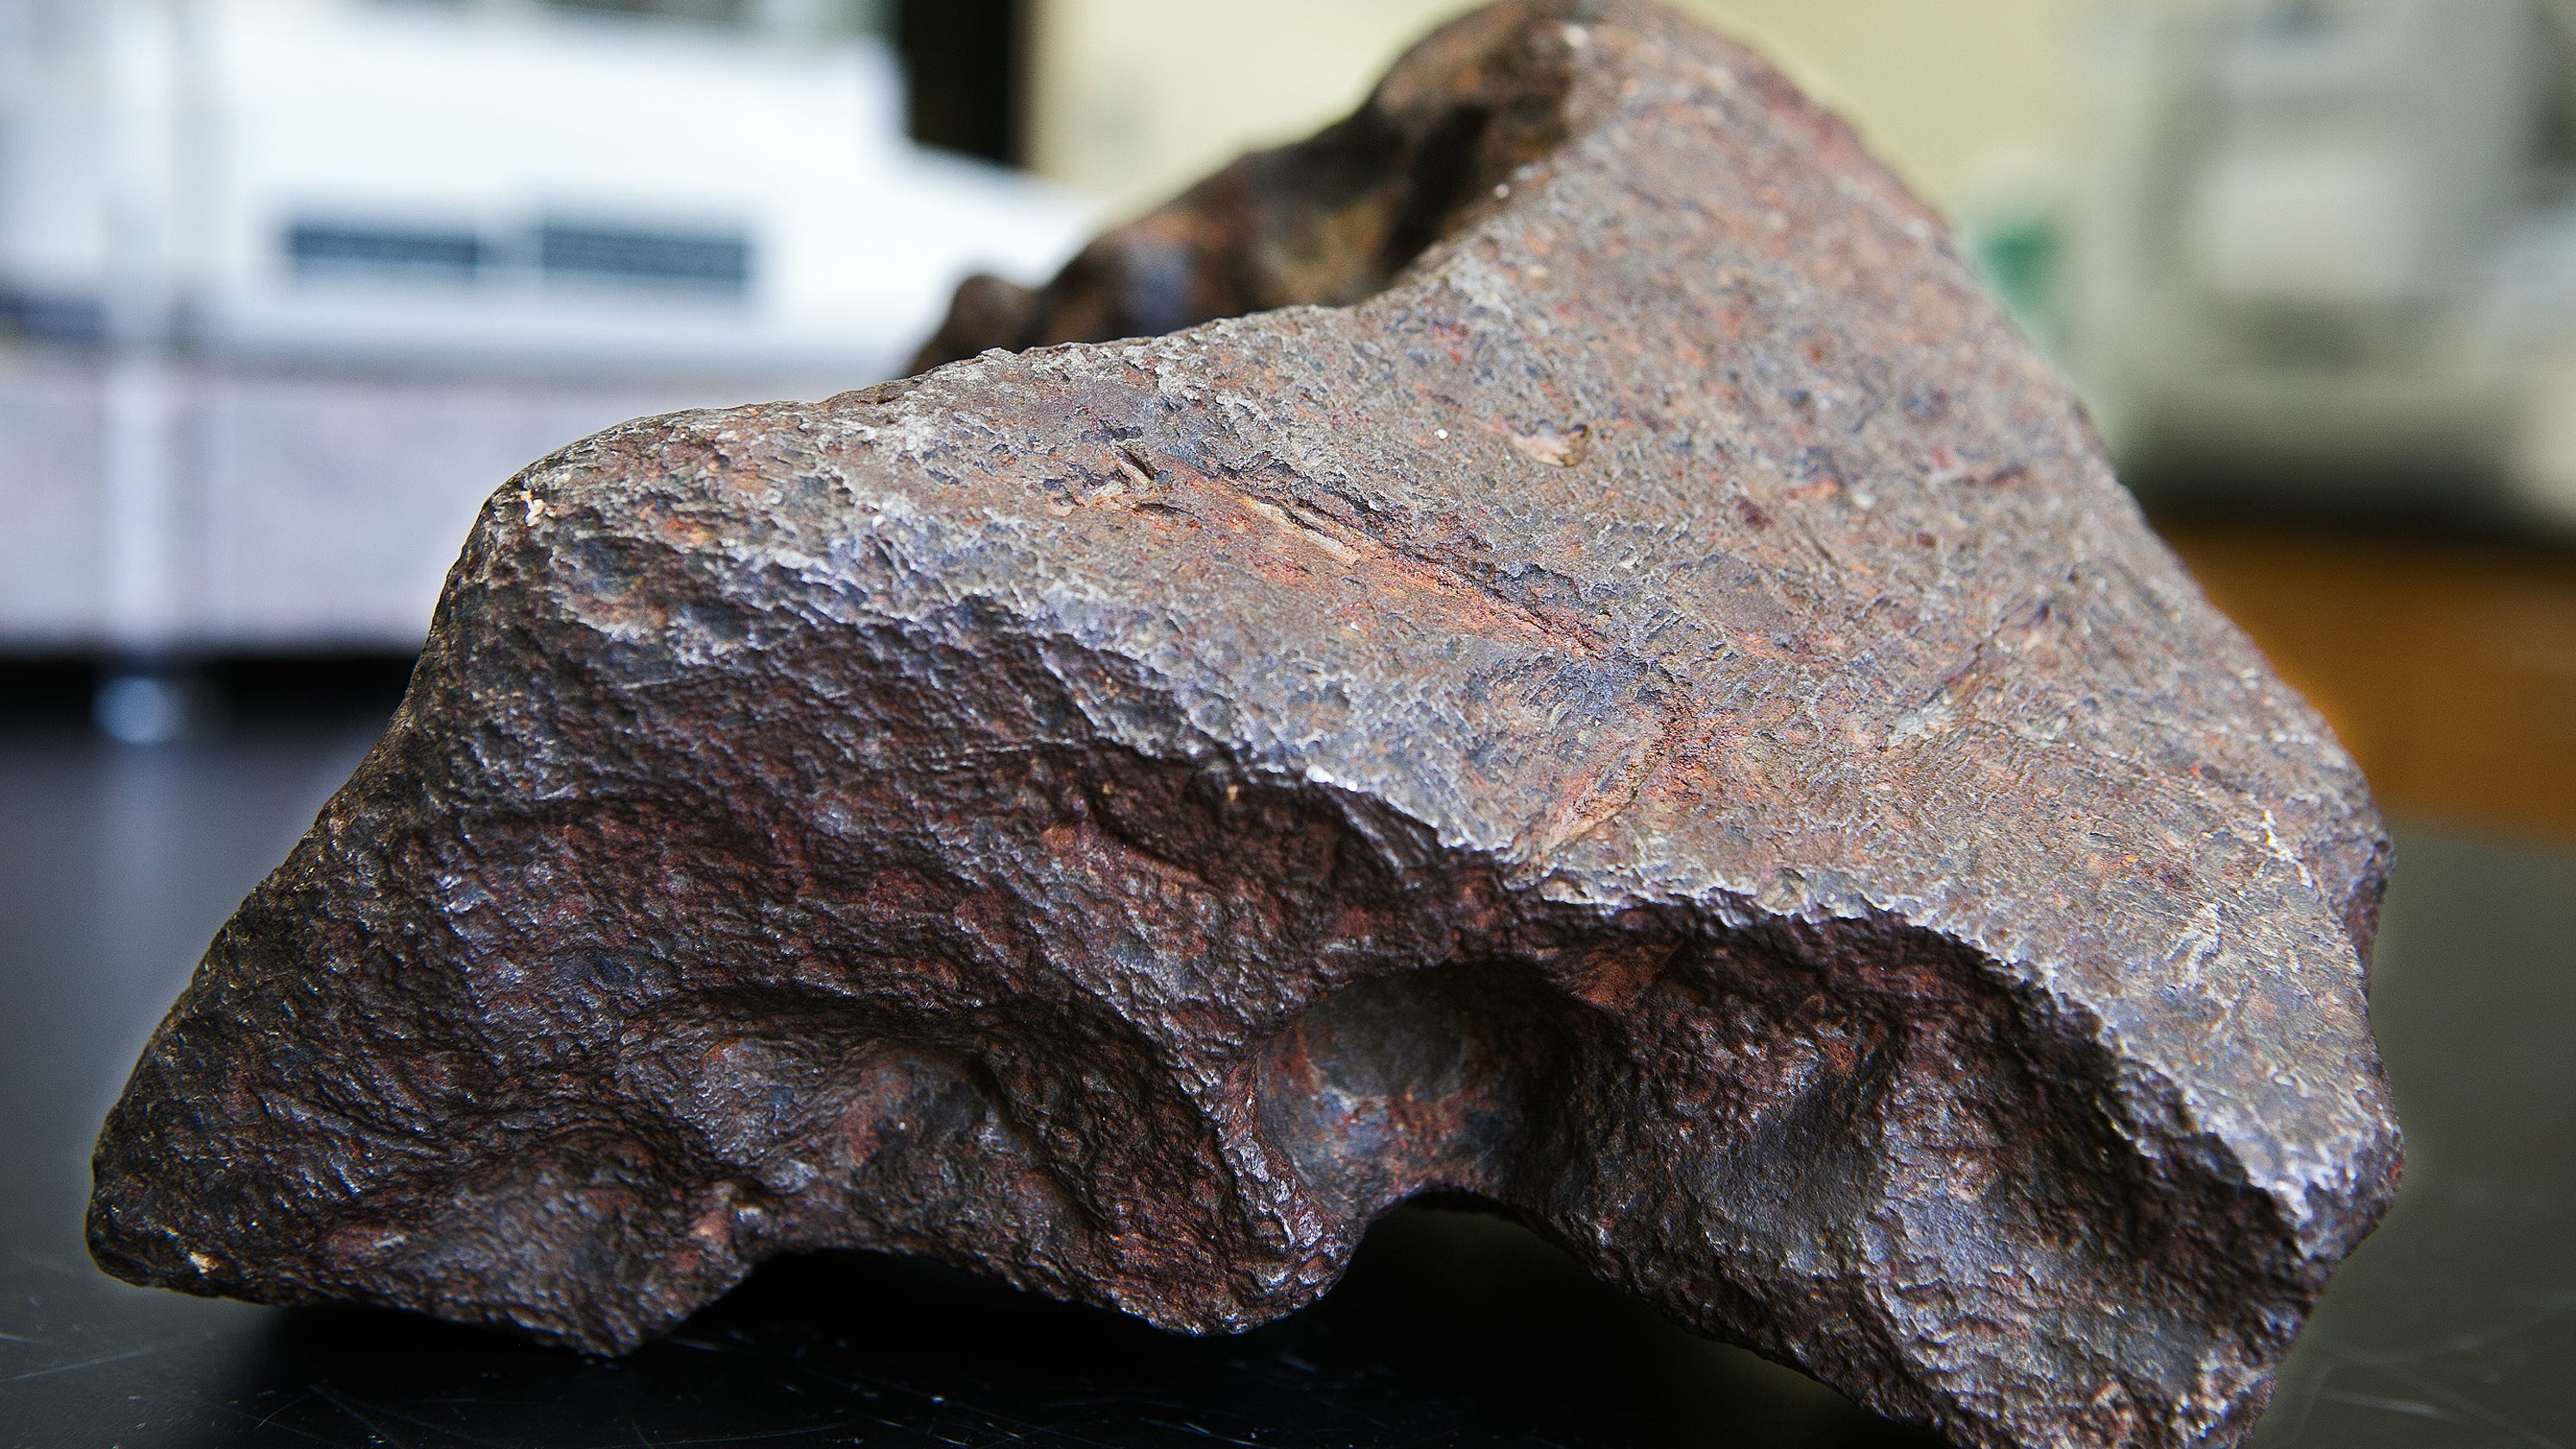 kuinka paljon meteoriitti maksaa kiloa kohden